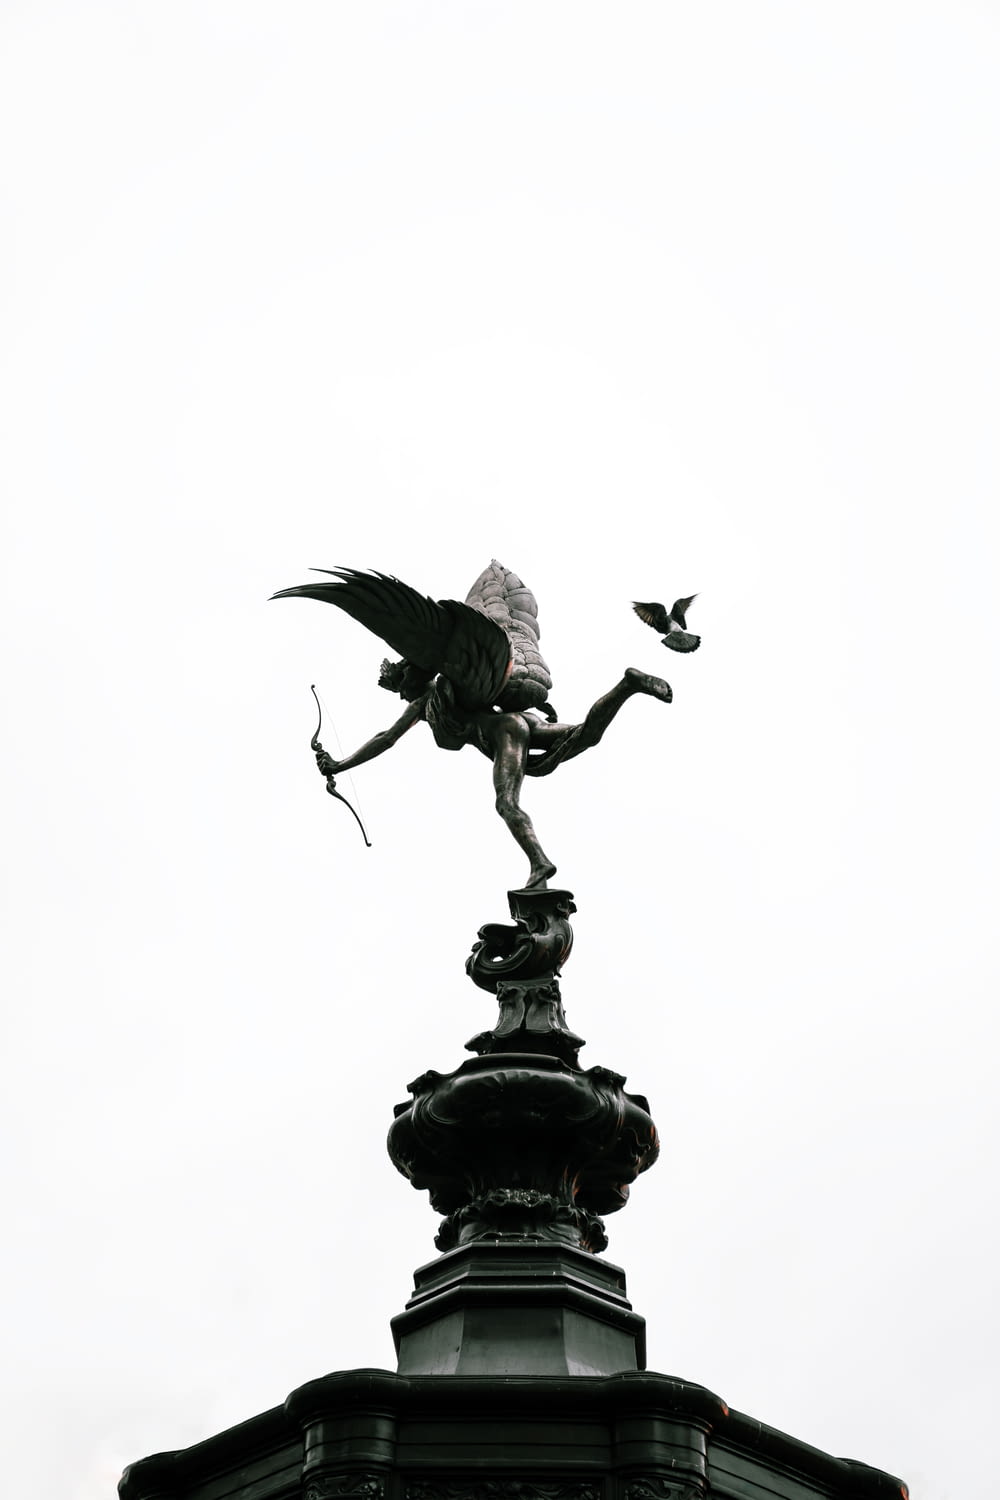 black bird statue under white sky during daytime